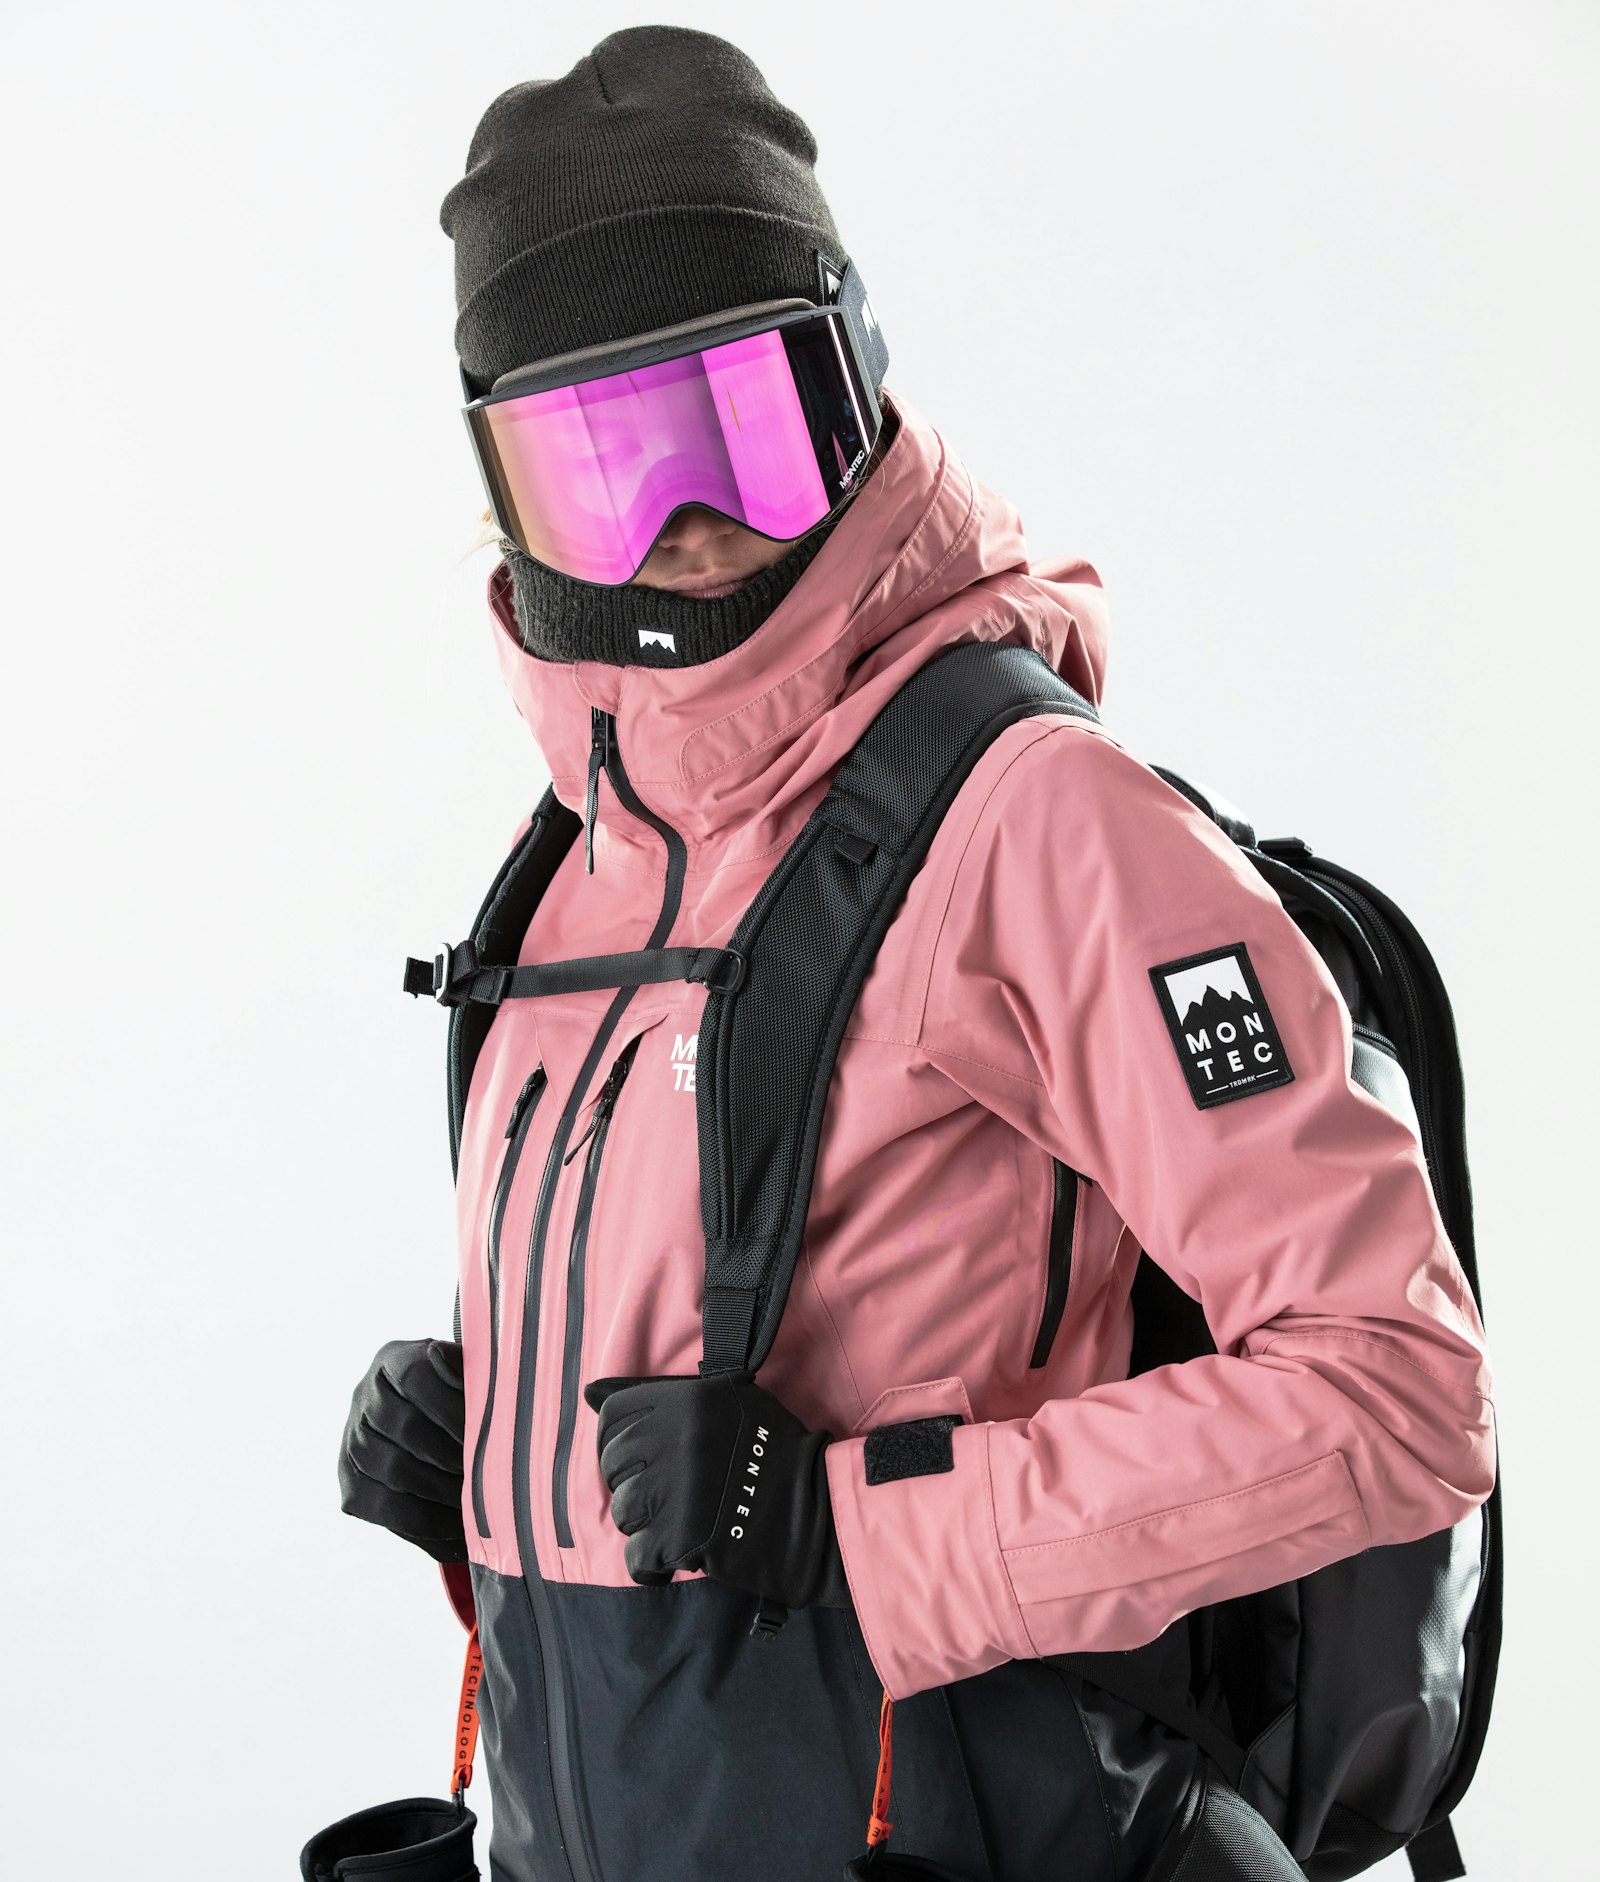 Moss W 2020 Snowboard Jacket Women Pink/Black